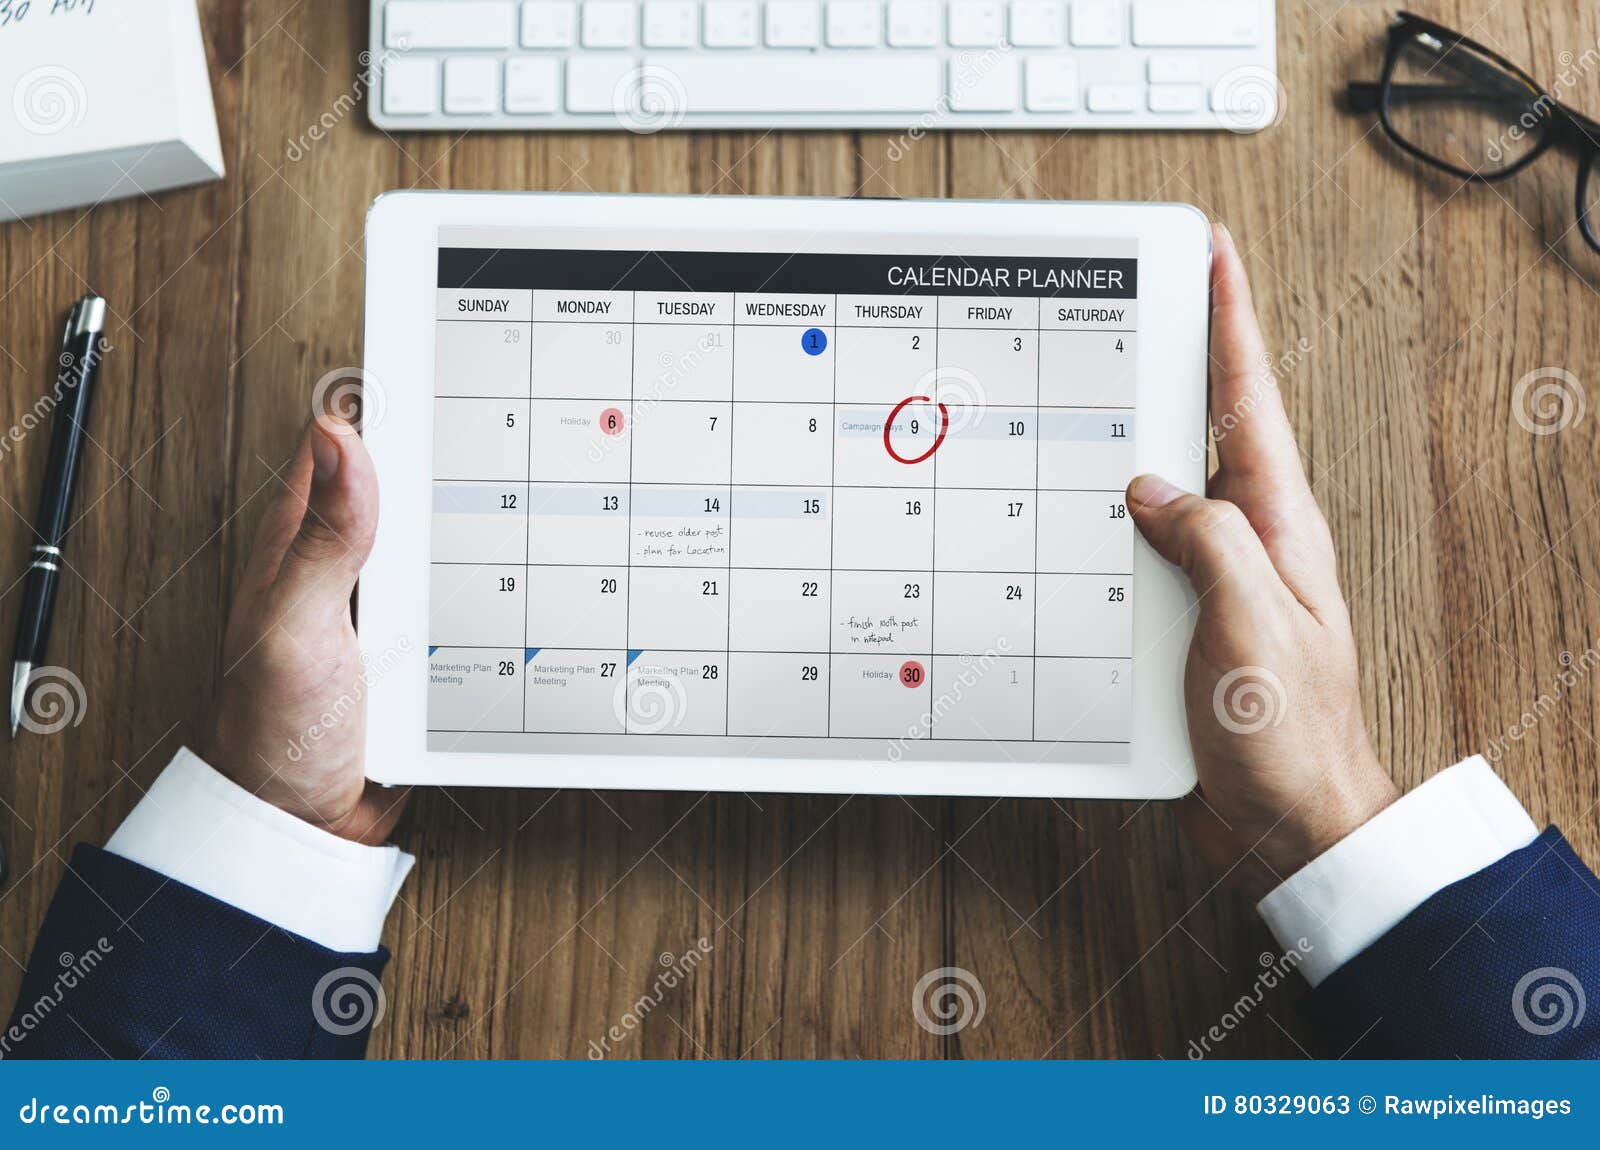 calendar appointment schedule memo management organizer urgency